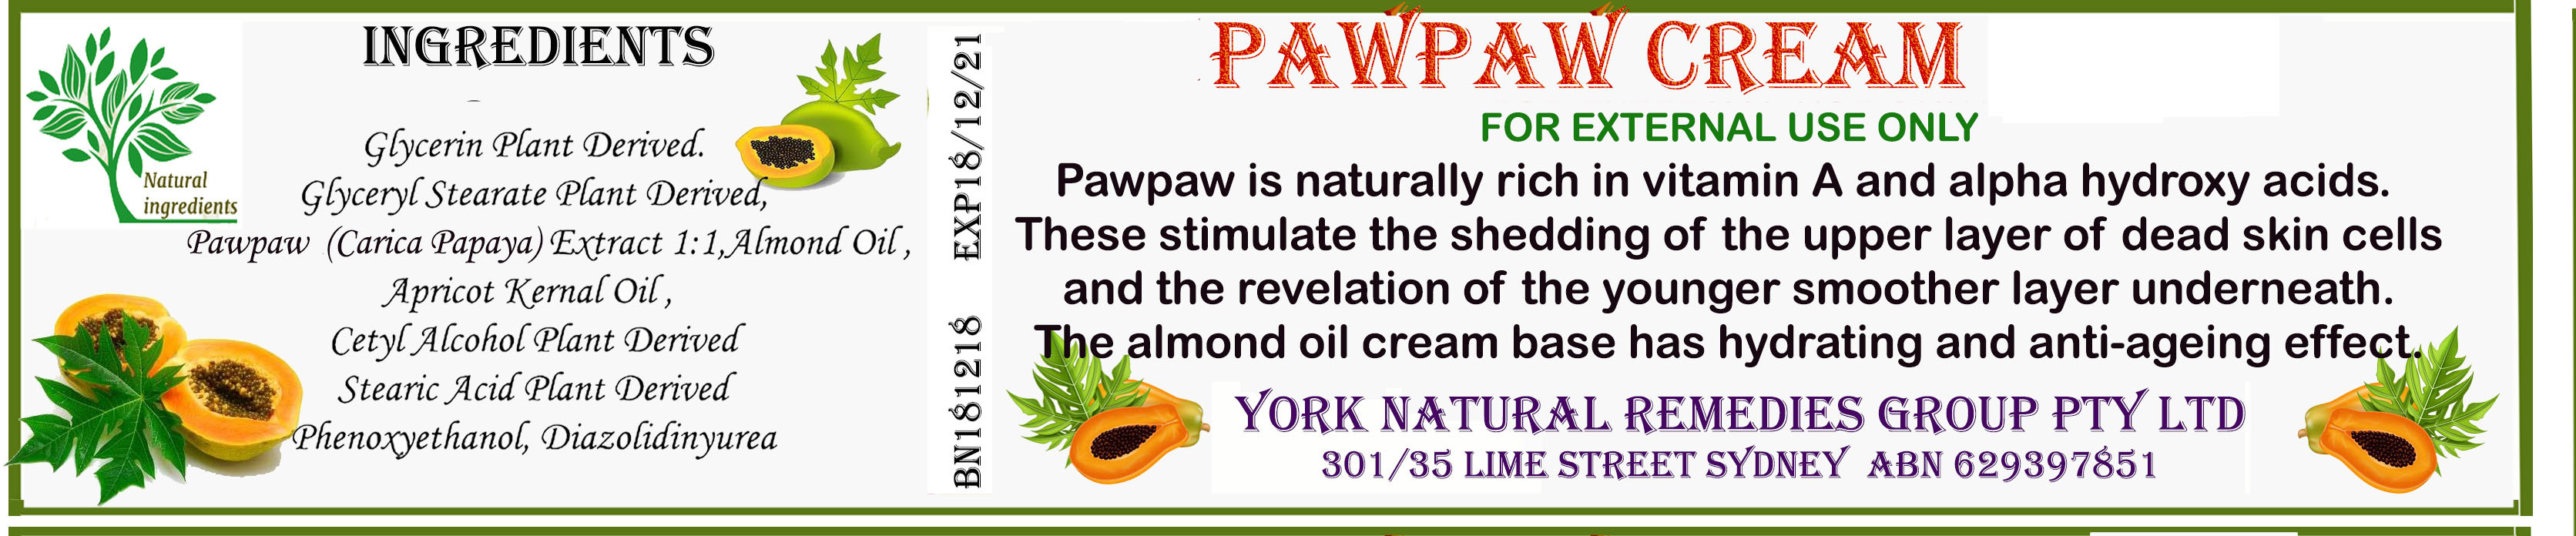 PawPaw_Cream